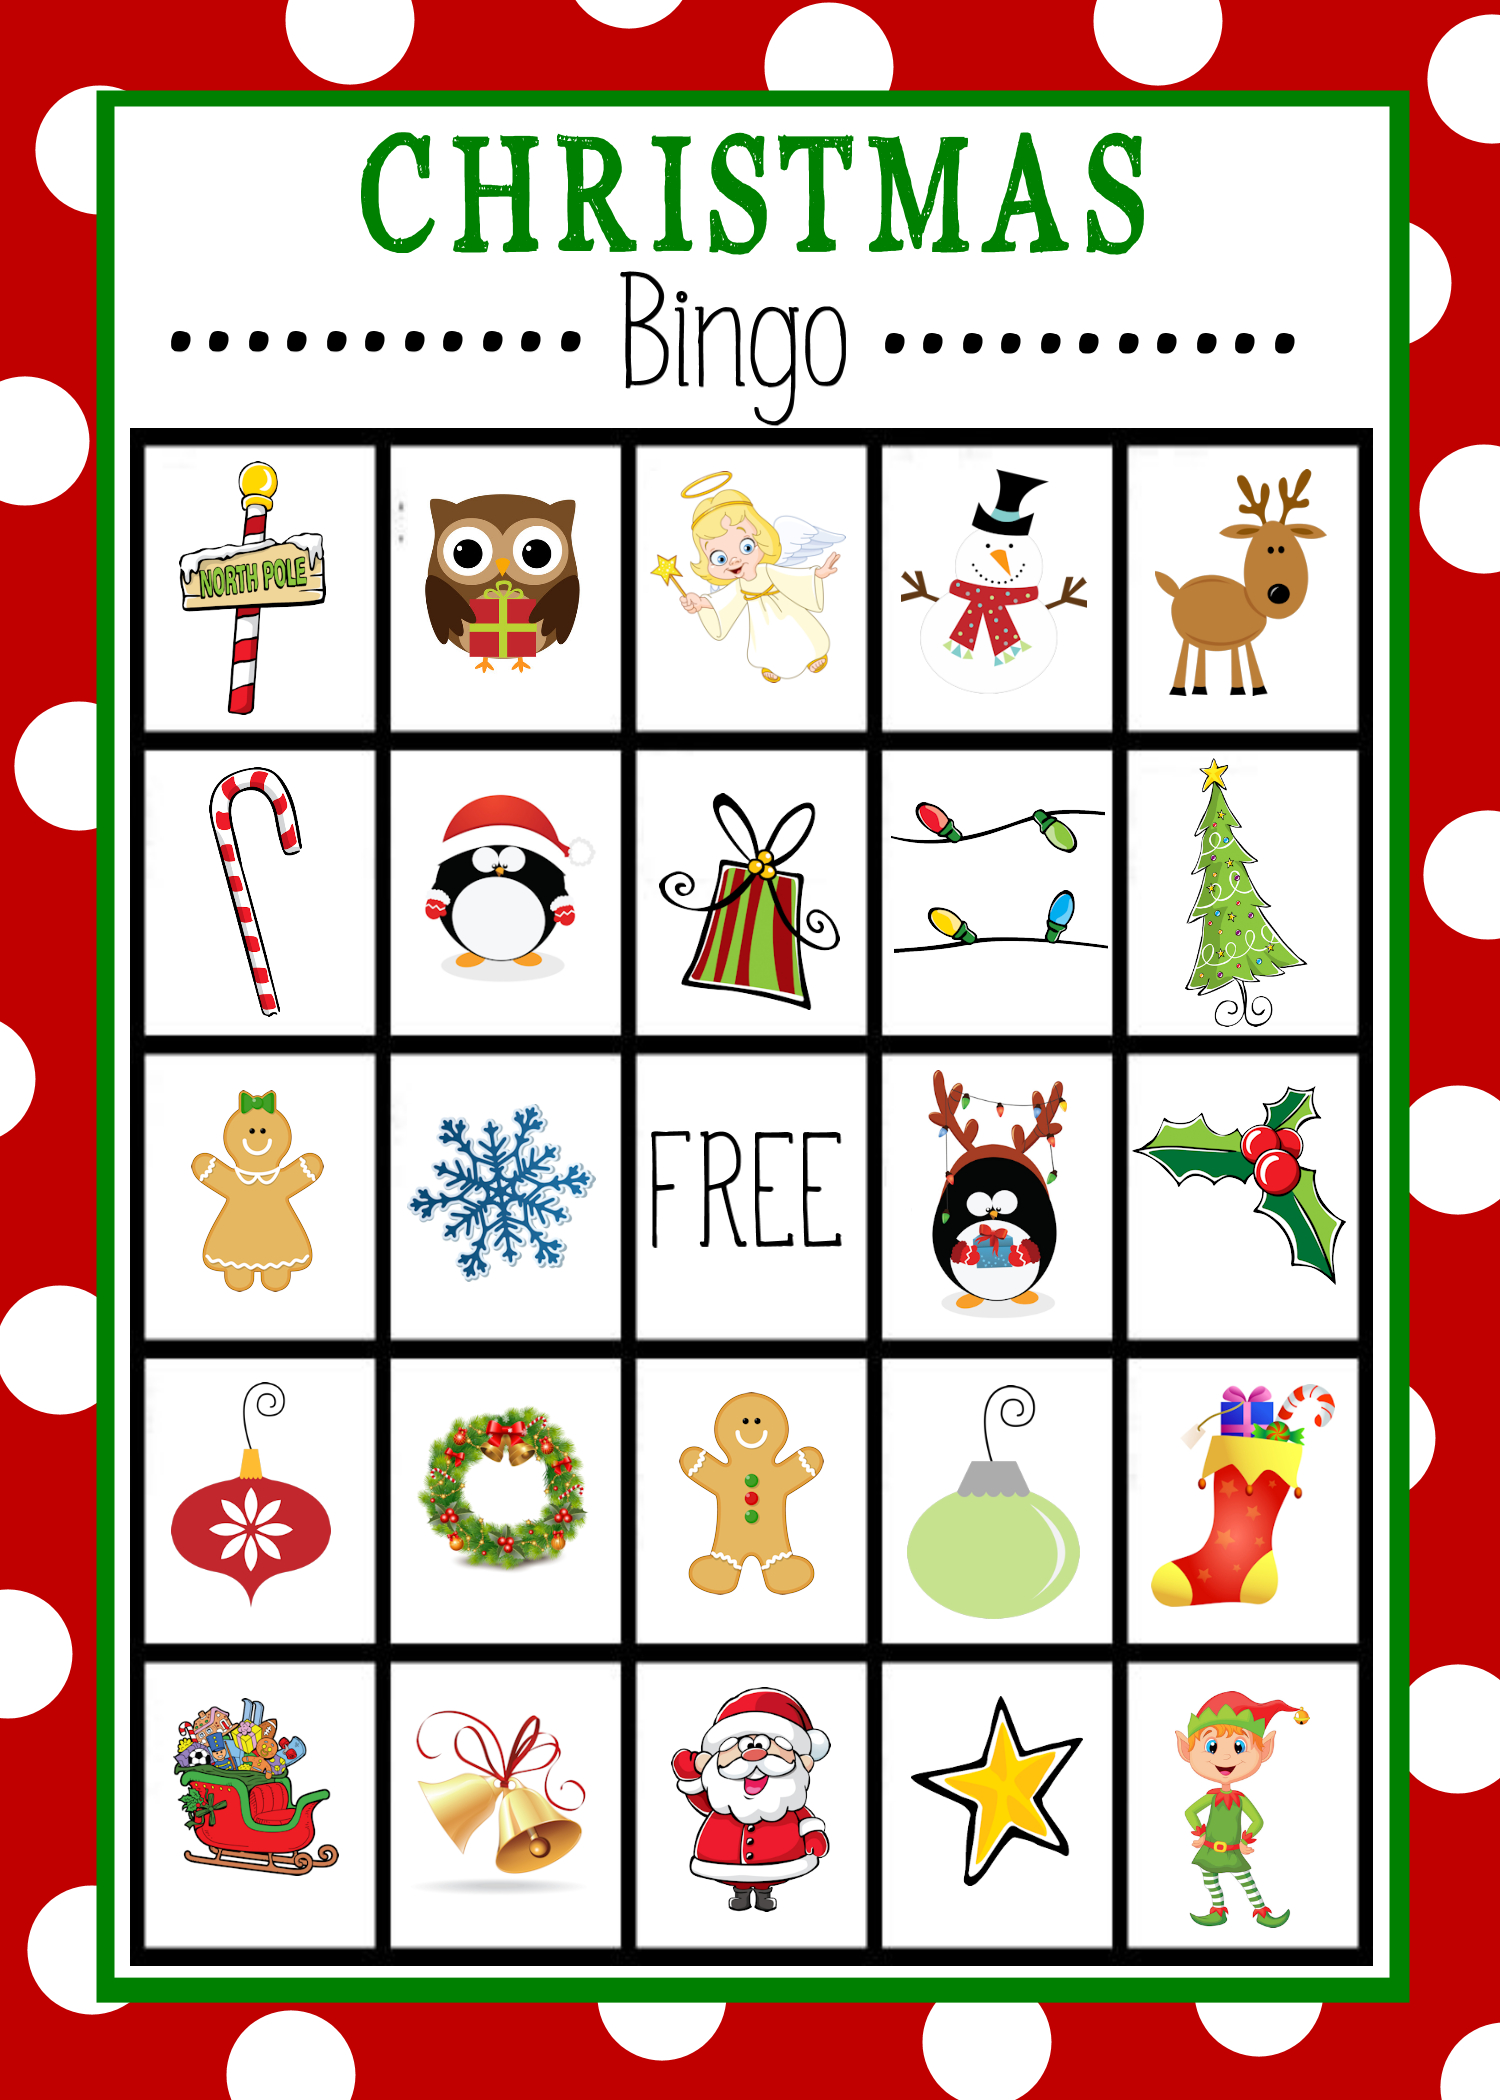 Free Printable Christmas Bingo Game | Christmas | Christmas Bingo - Free Christmas Bingo Game Printable